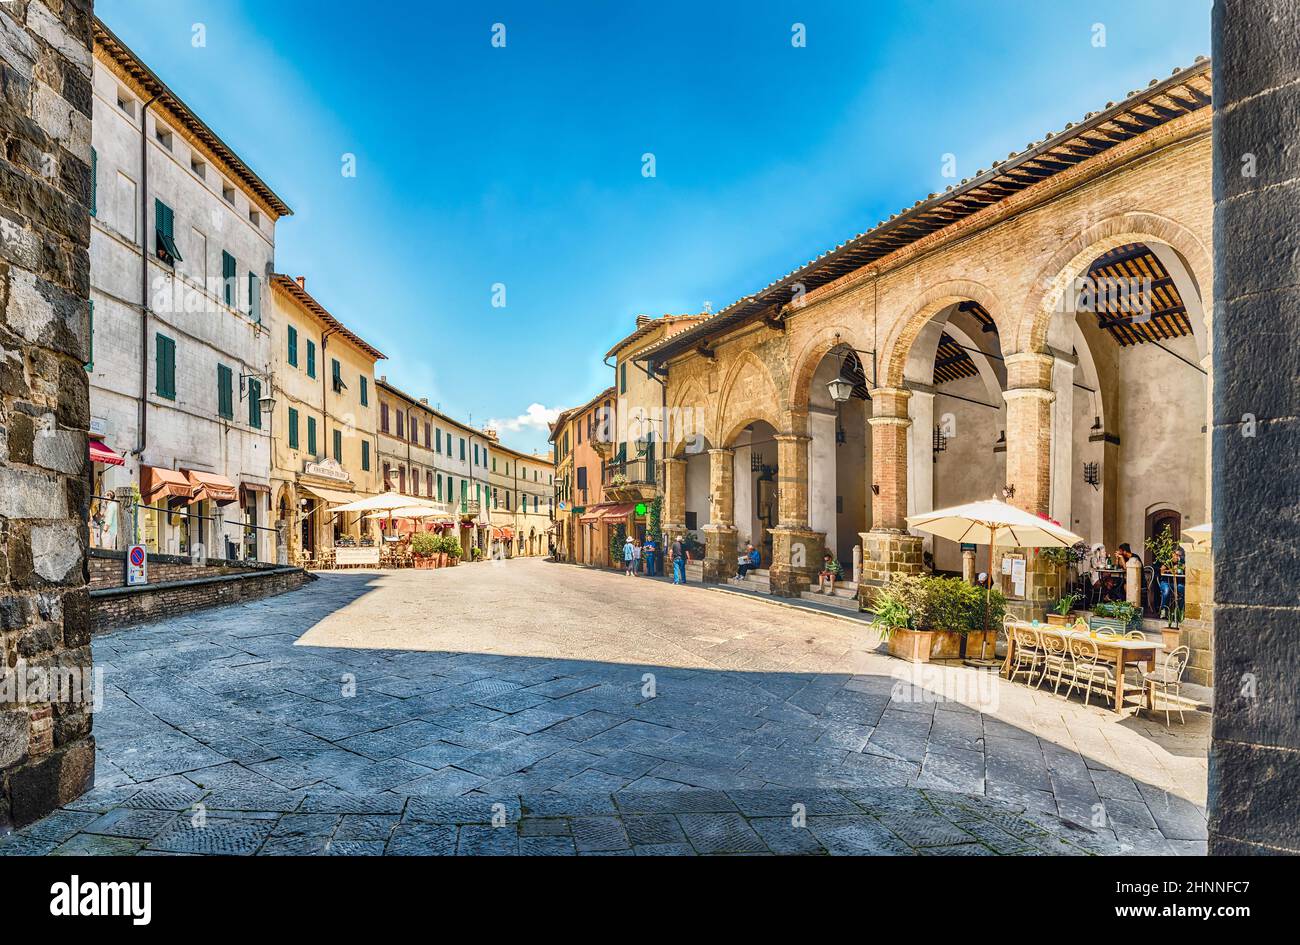 Las pintorescas calles medievales de Montalcino, provincia de Siena, Italia Foto de stock